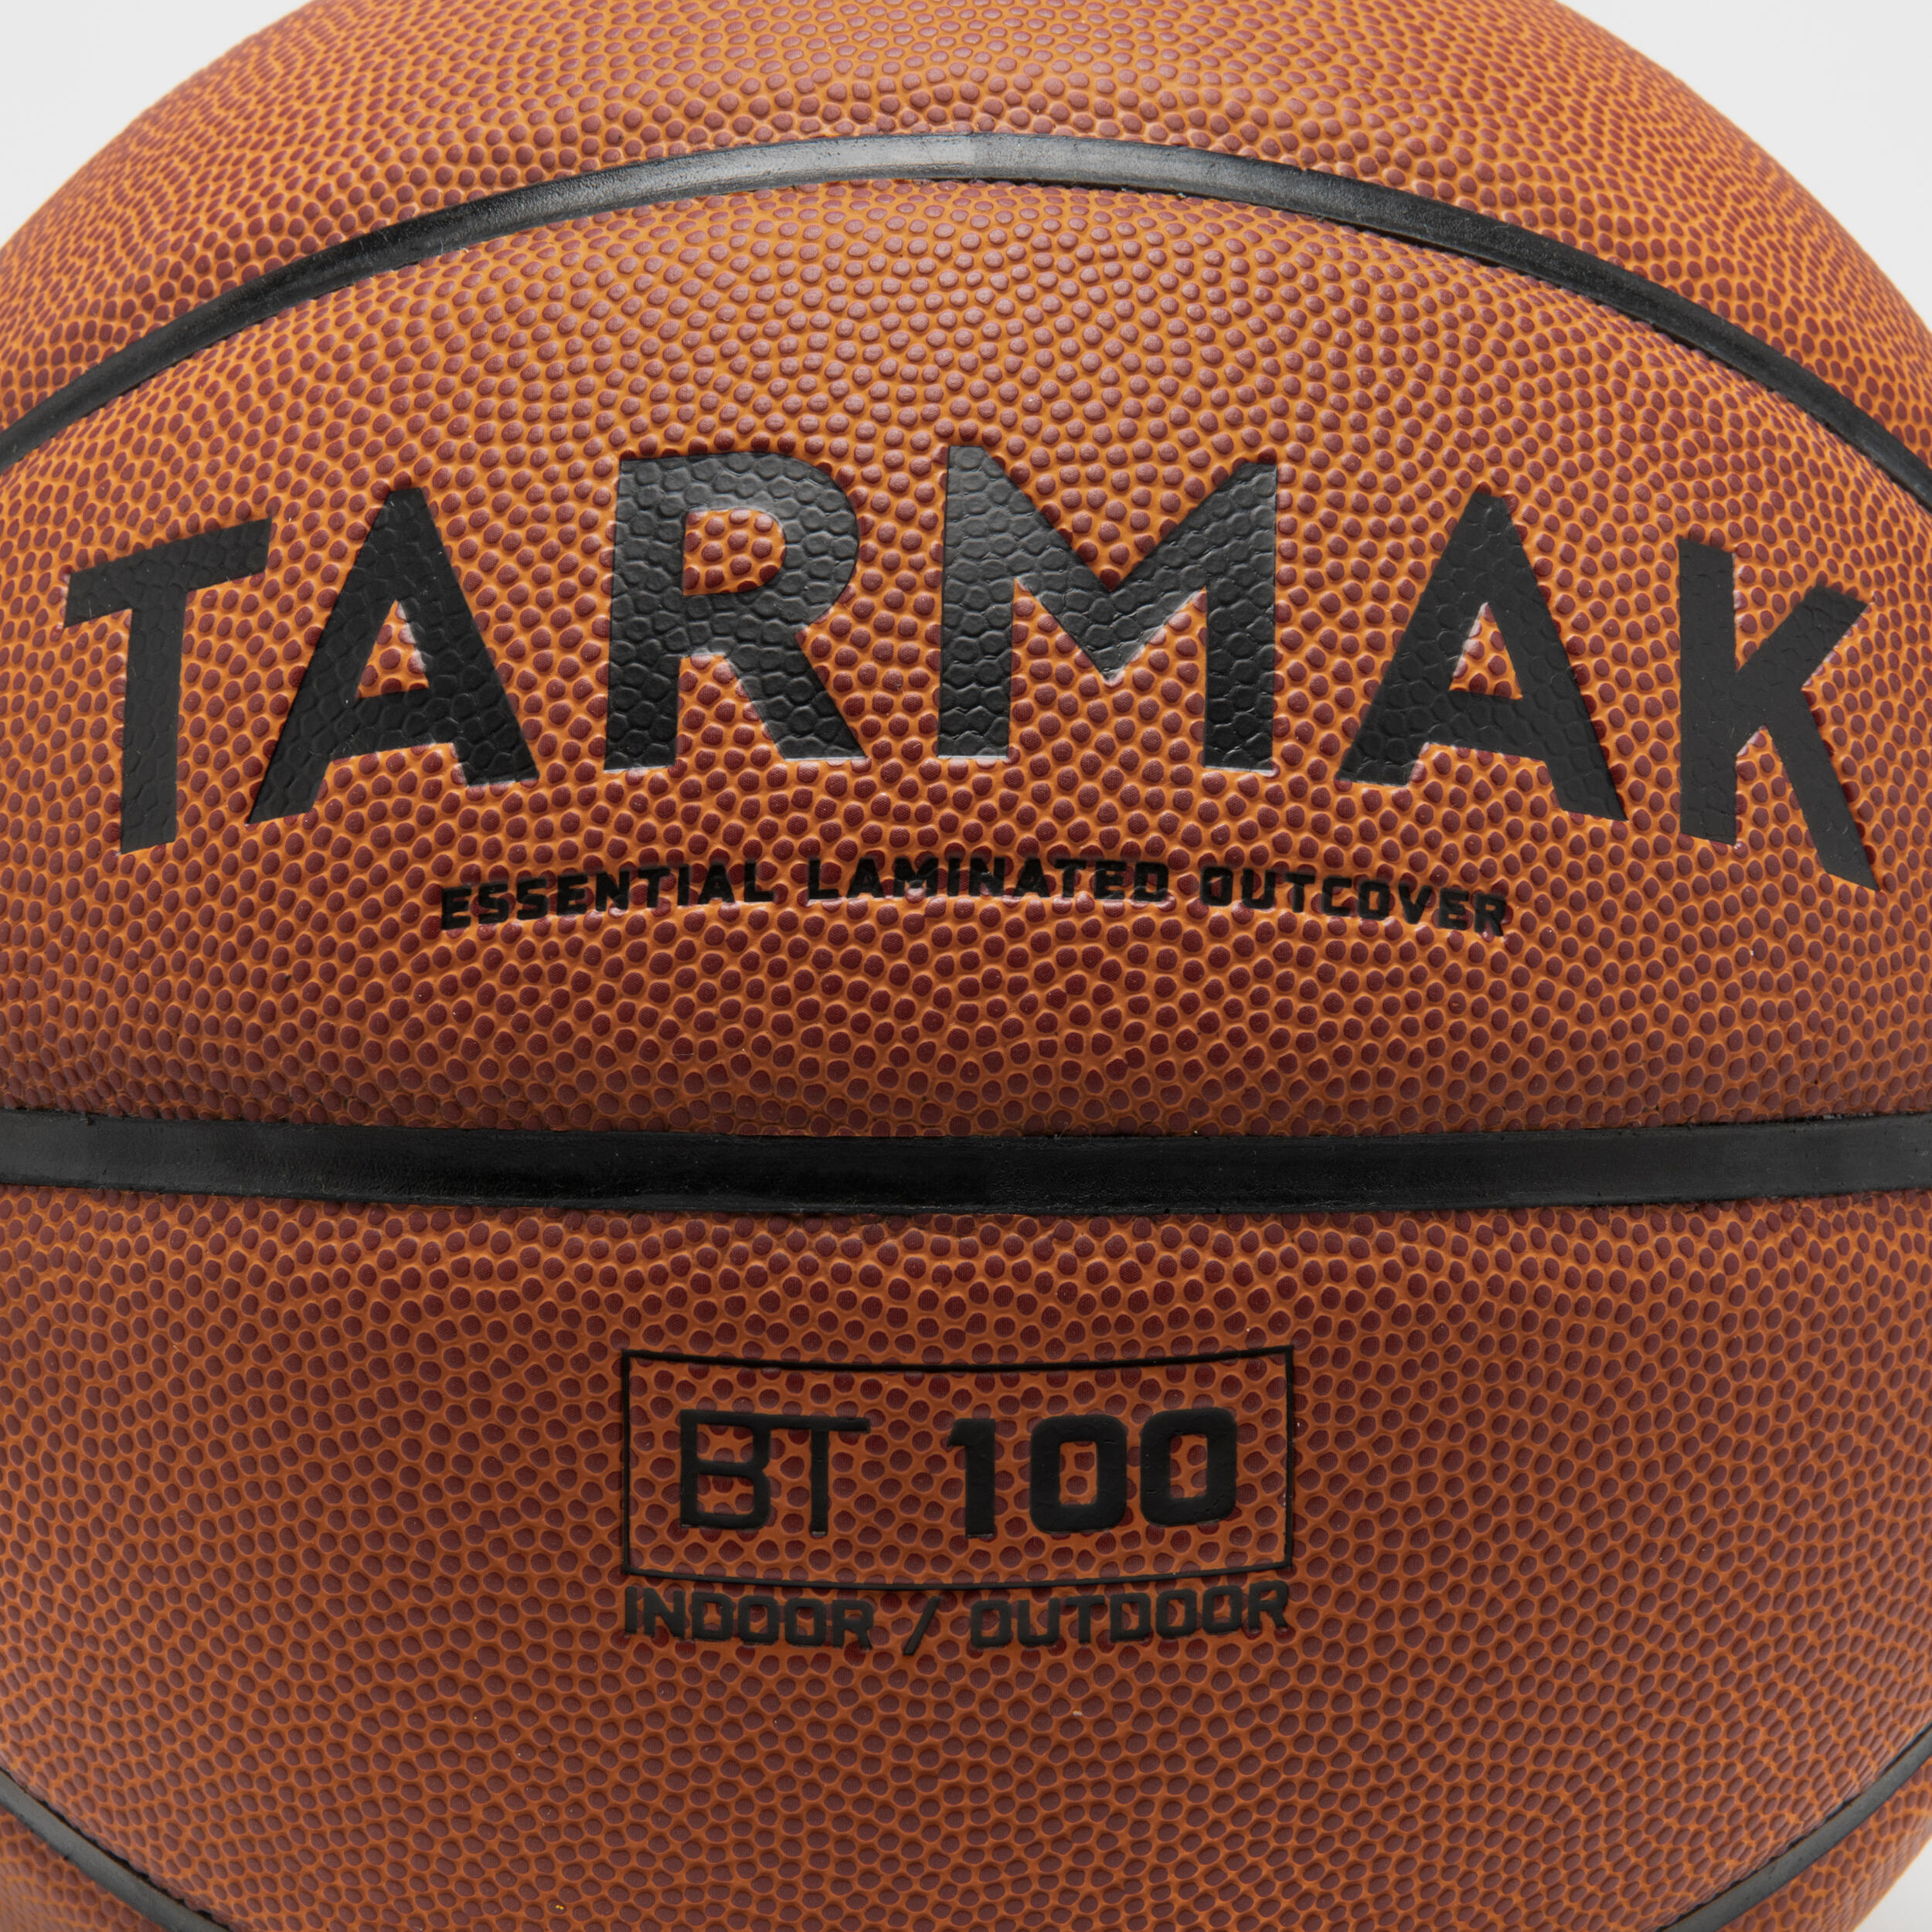 Size 6 FIBA Basketball BT100 Touch - Brown 5/7